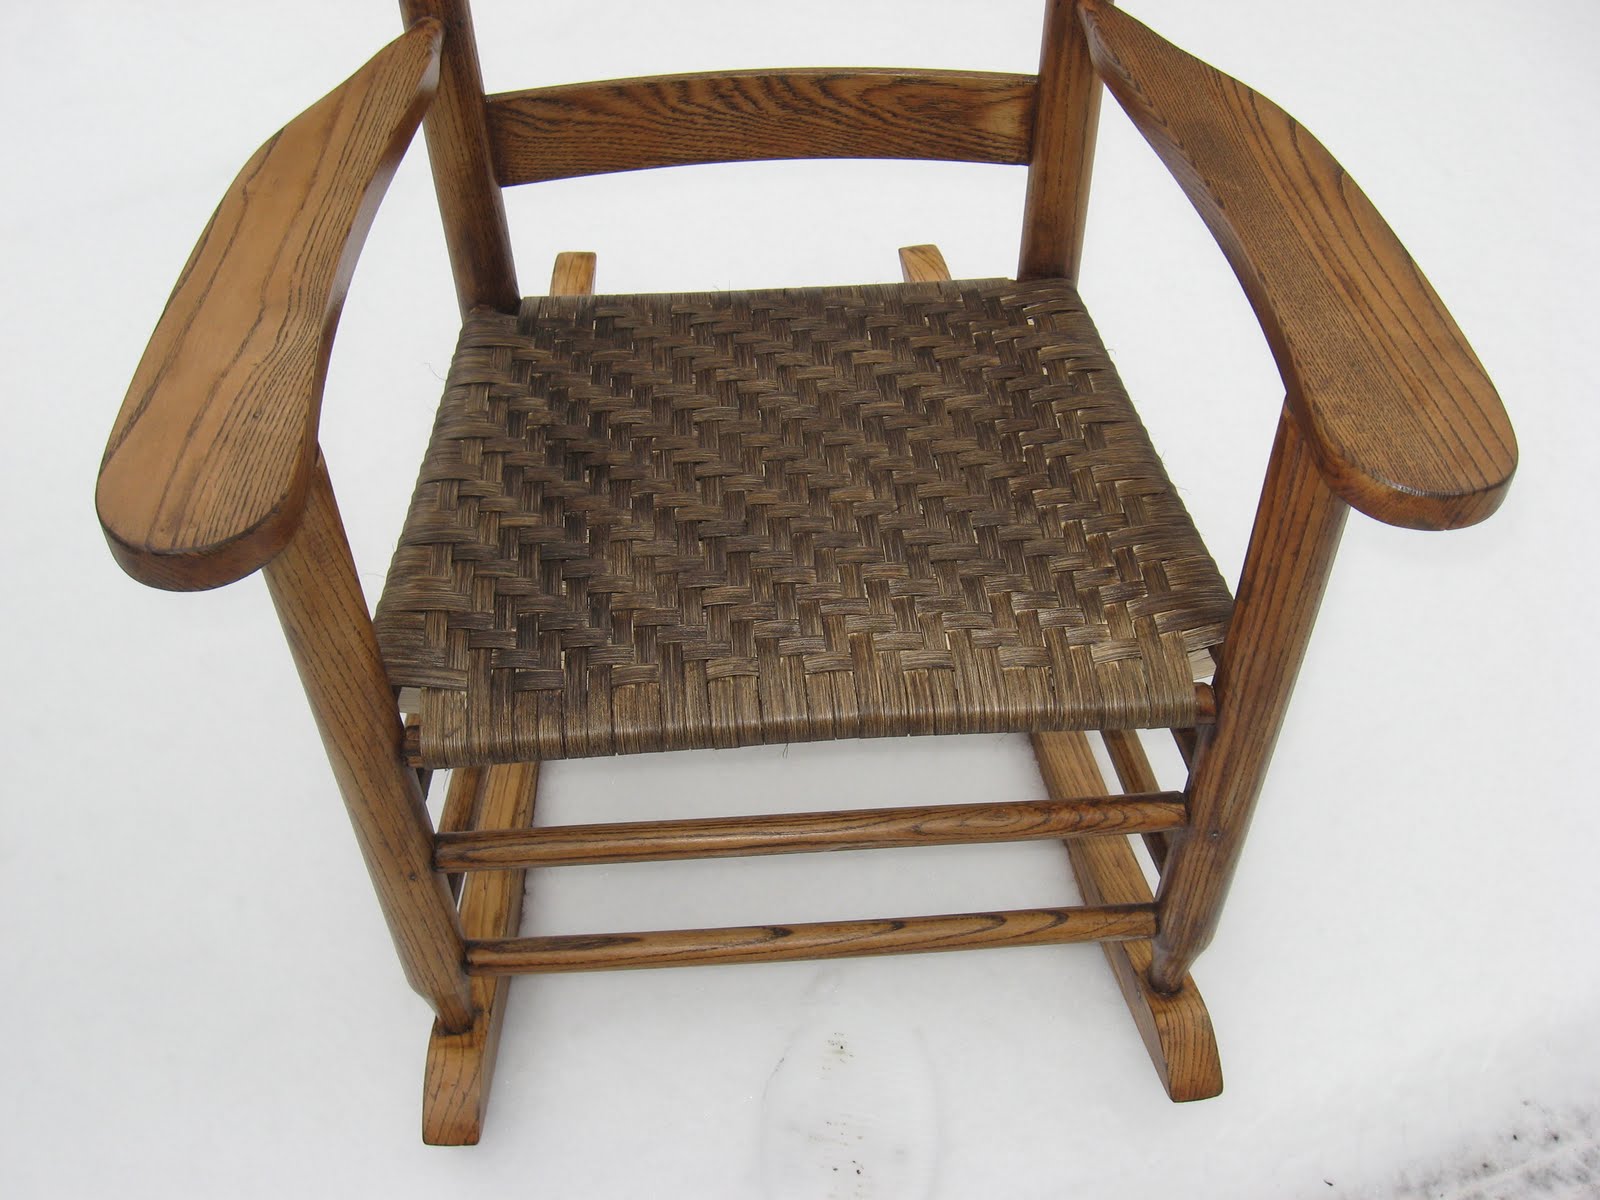 Maine Antique Chair Repair: Chair Inventory